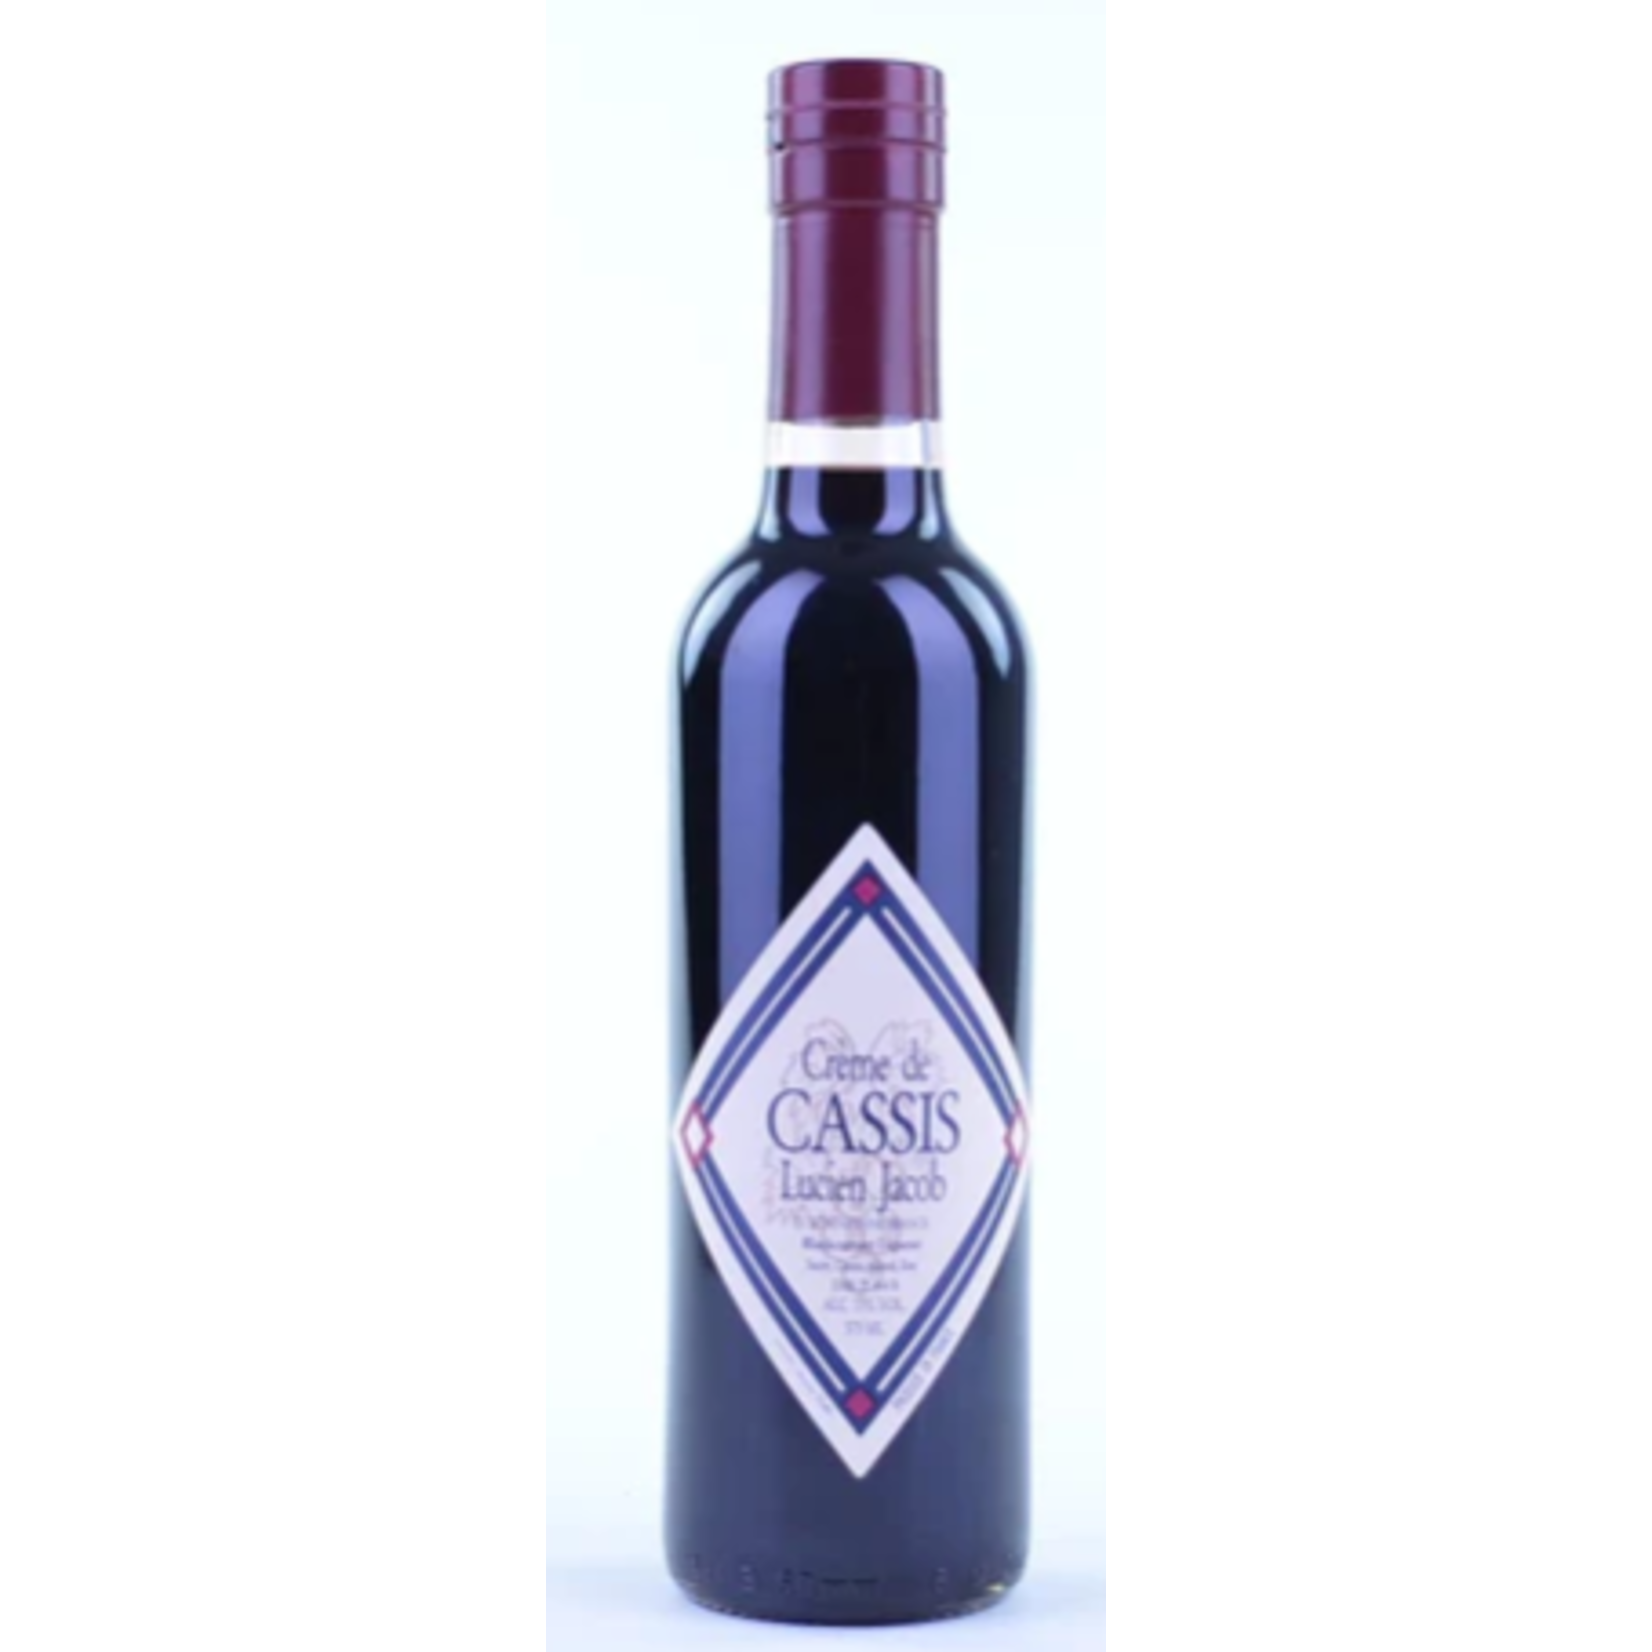 Lucien Jacob Creme de Cassis, Domaine Lucien Jacob Blackcurrent Liquor 375 ml